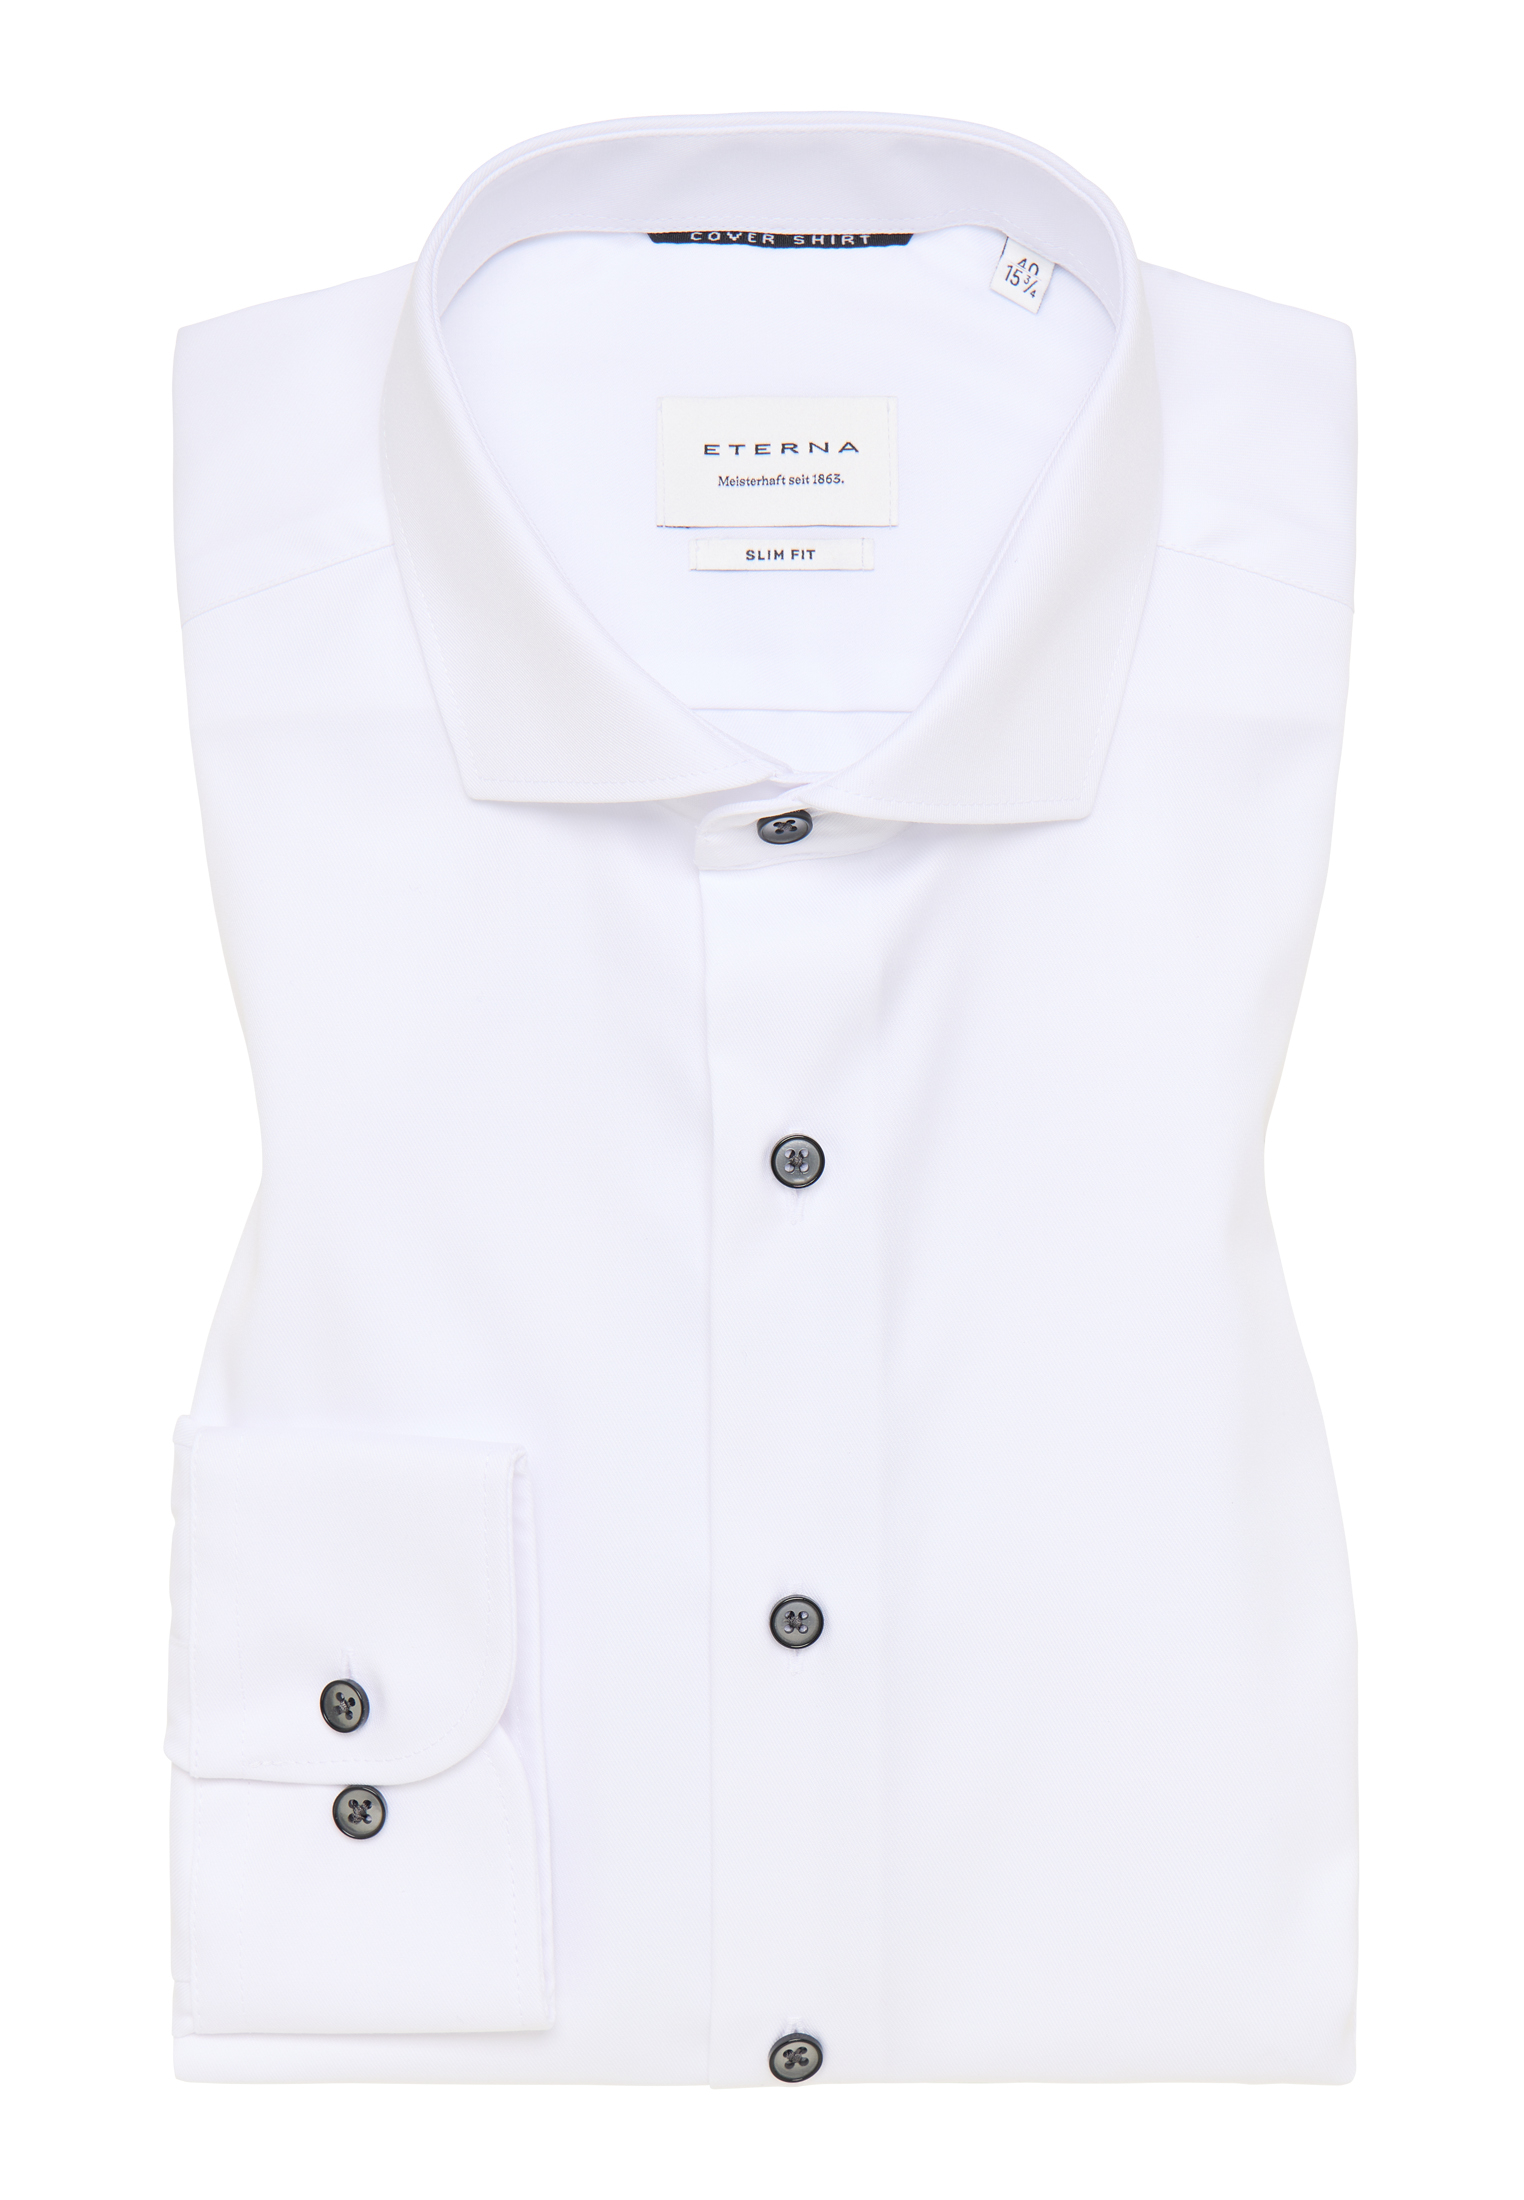 SLIM FIT Cover Shirt in weiß unifarben | weiß | 40 | Langarm |  1SH05554-00-01-40-1/1